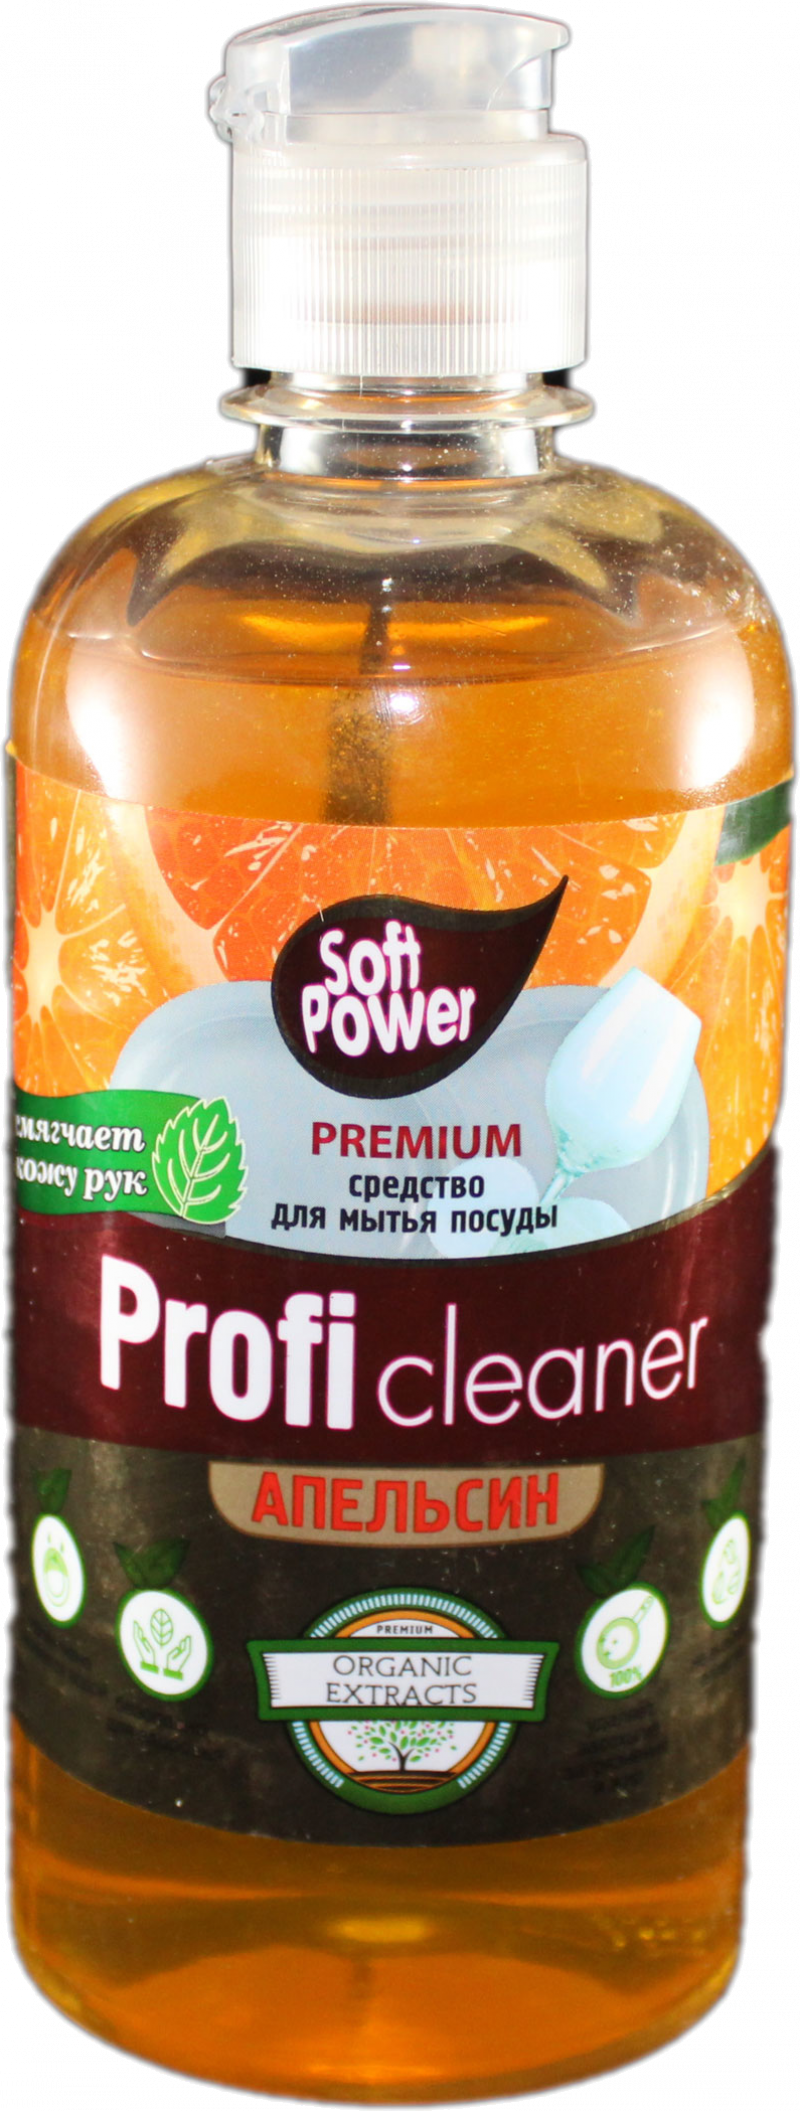 Средства для мытья посуды ТМ Soft power profi 500мл.апельсин